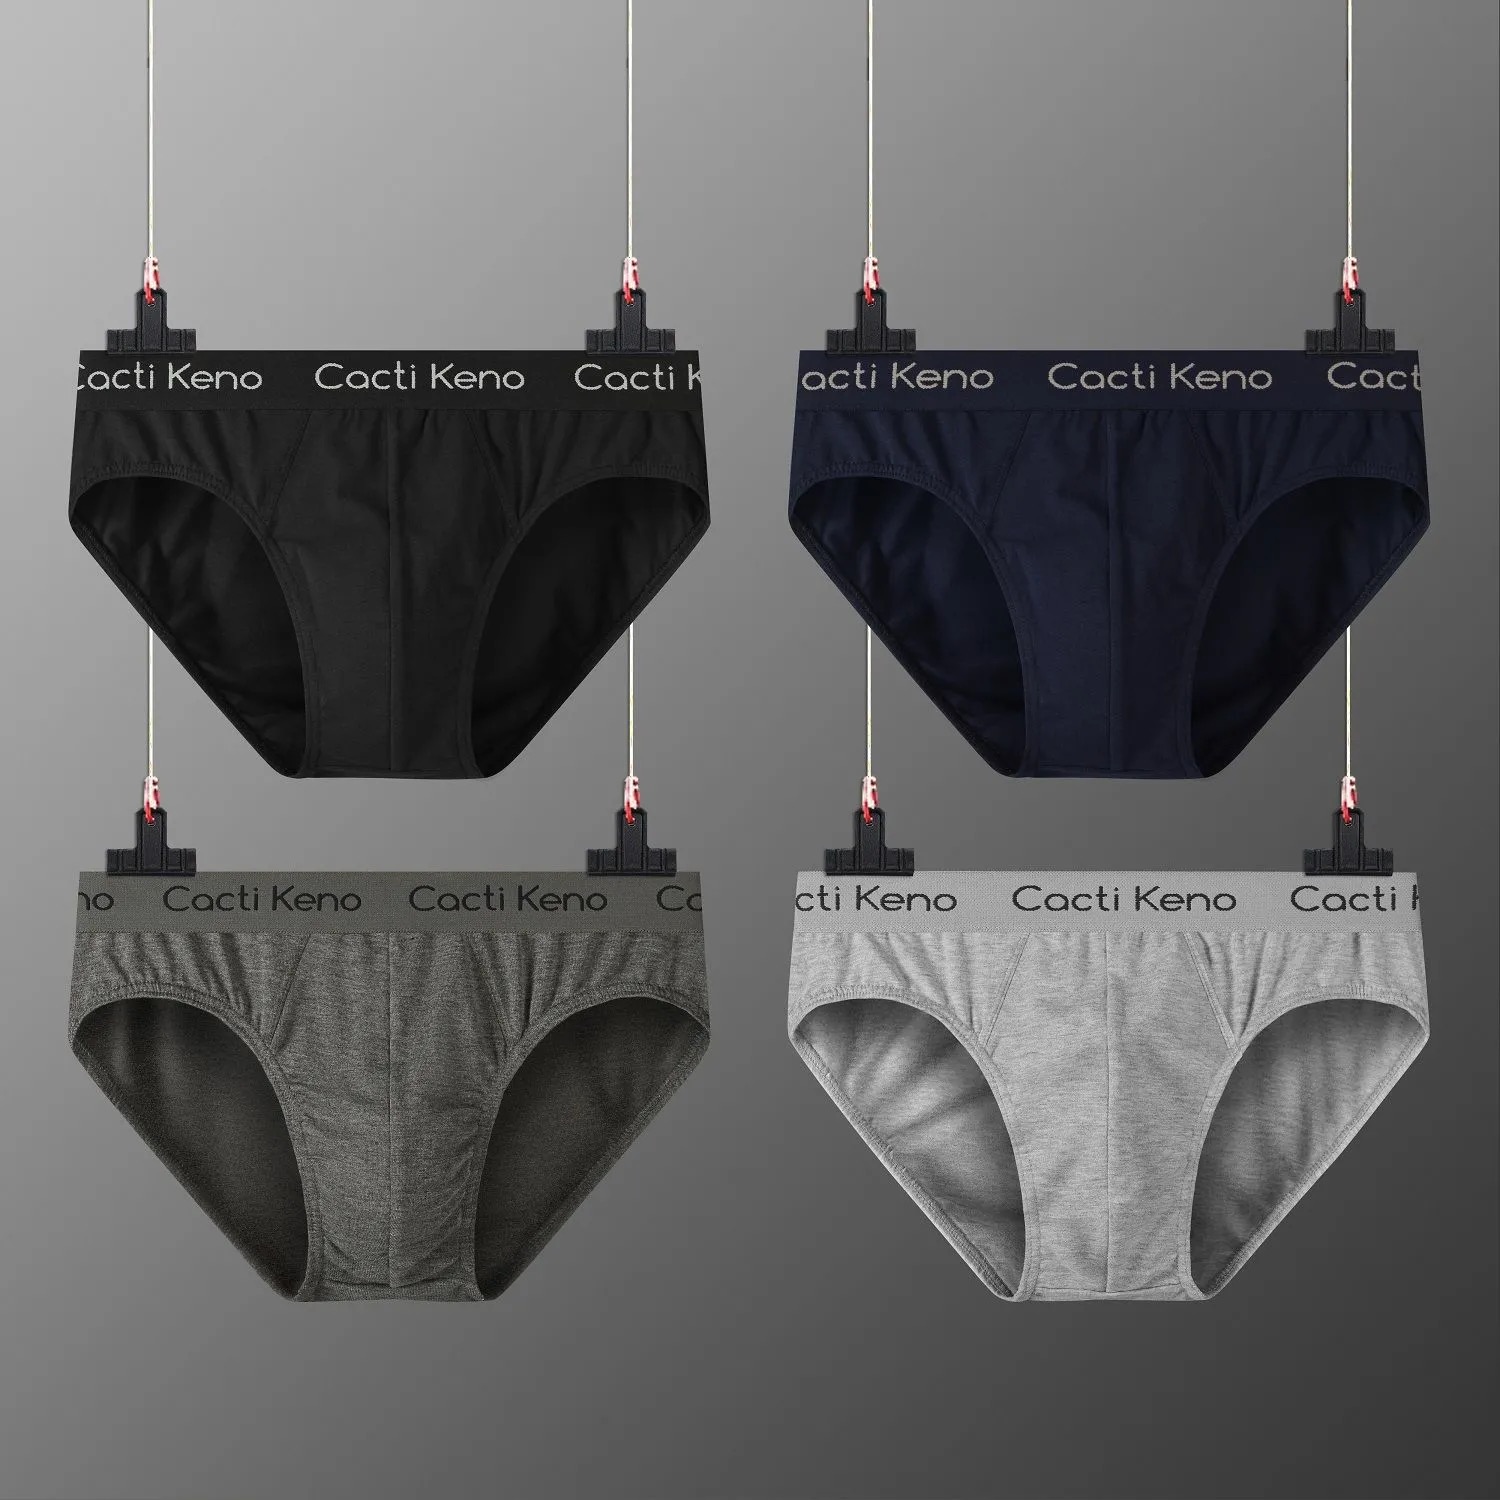 Packsmen S High Quality Briefs For Men Cotton Stretch Underwear